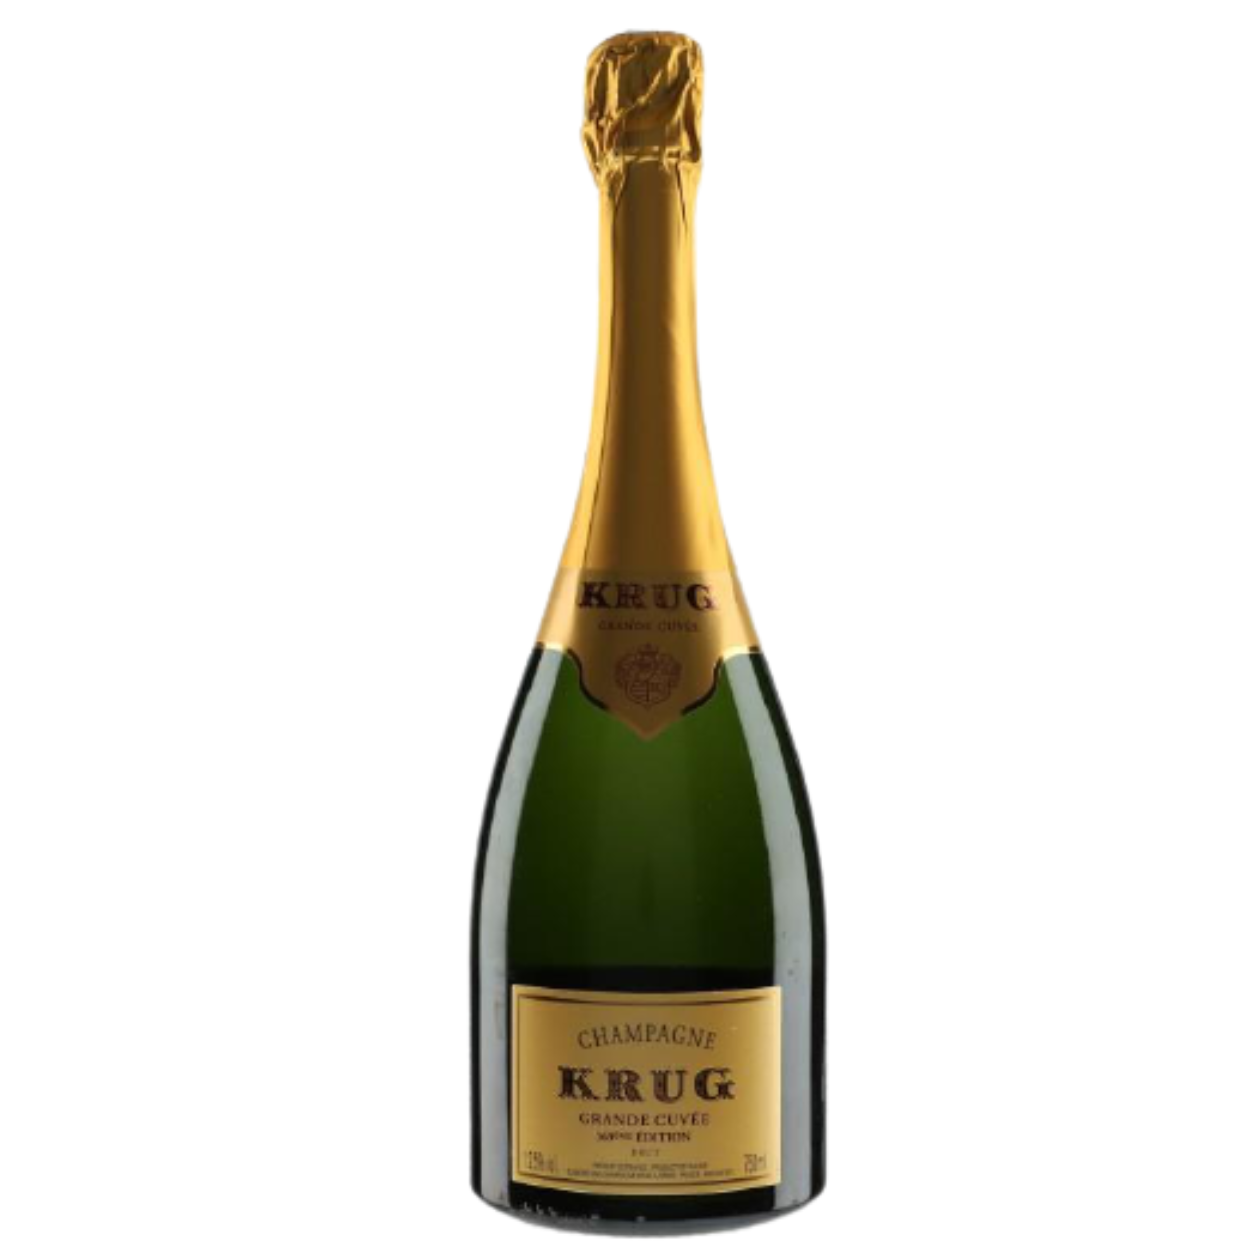 NV The Cuvee Grande eme Champagne Connection Edition 171 Wine | France Brut Krug